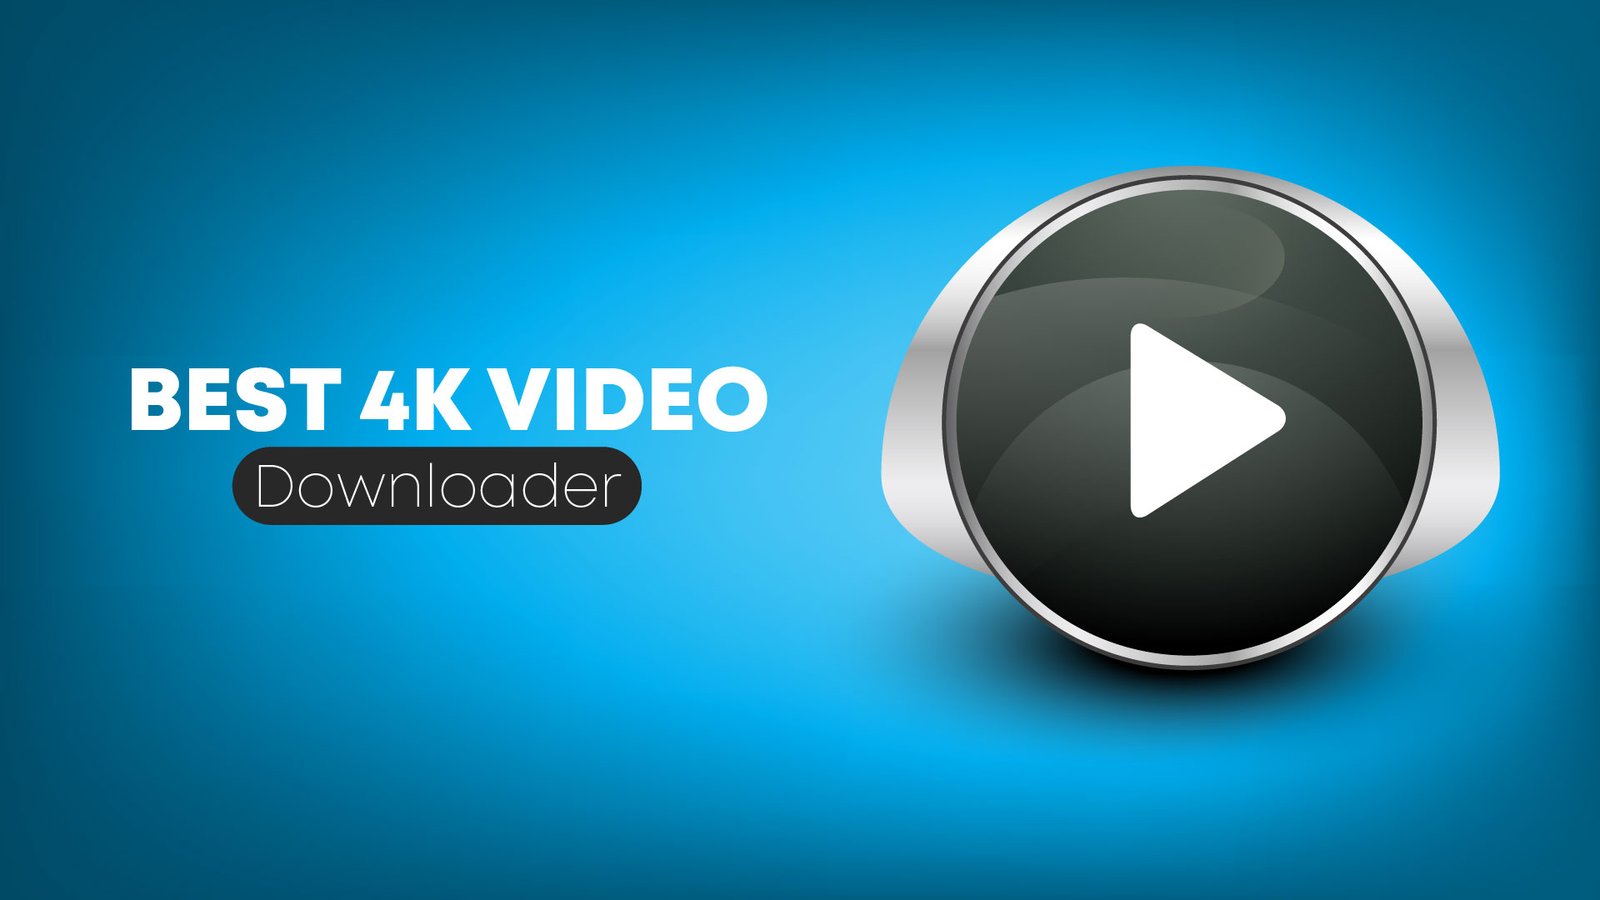 4k video downloader interfaz